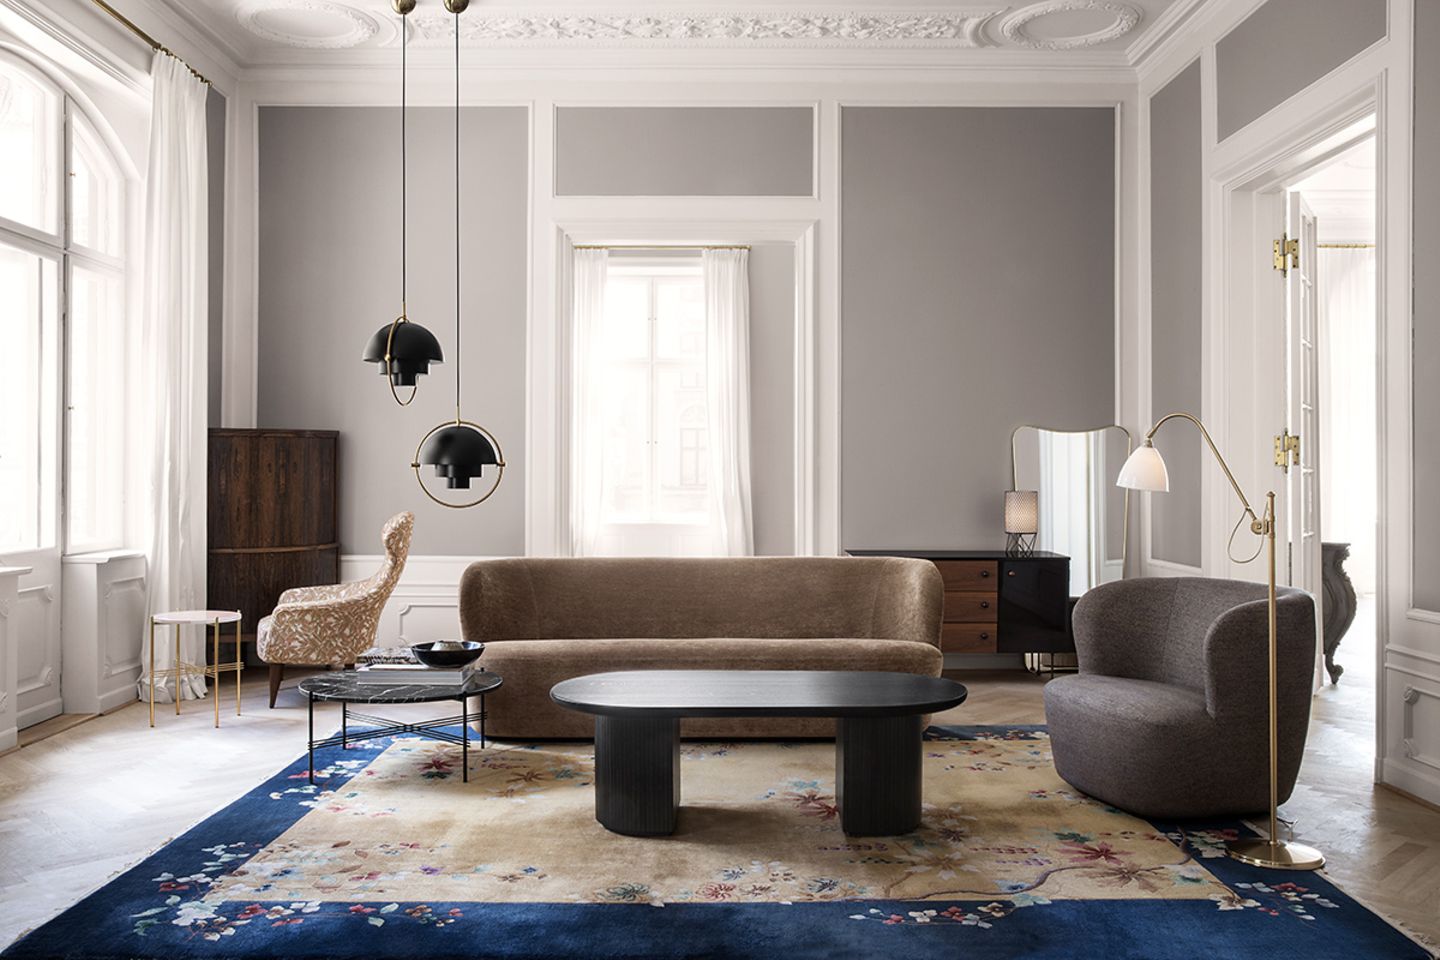 Wohnzimmer in einer Altbauwohnung mit stilvoll gestalteter Stuckdecke, grauen Wänden und Möbeln in dunklen Tönen